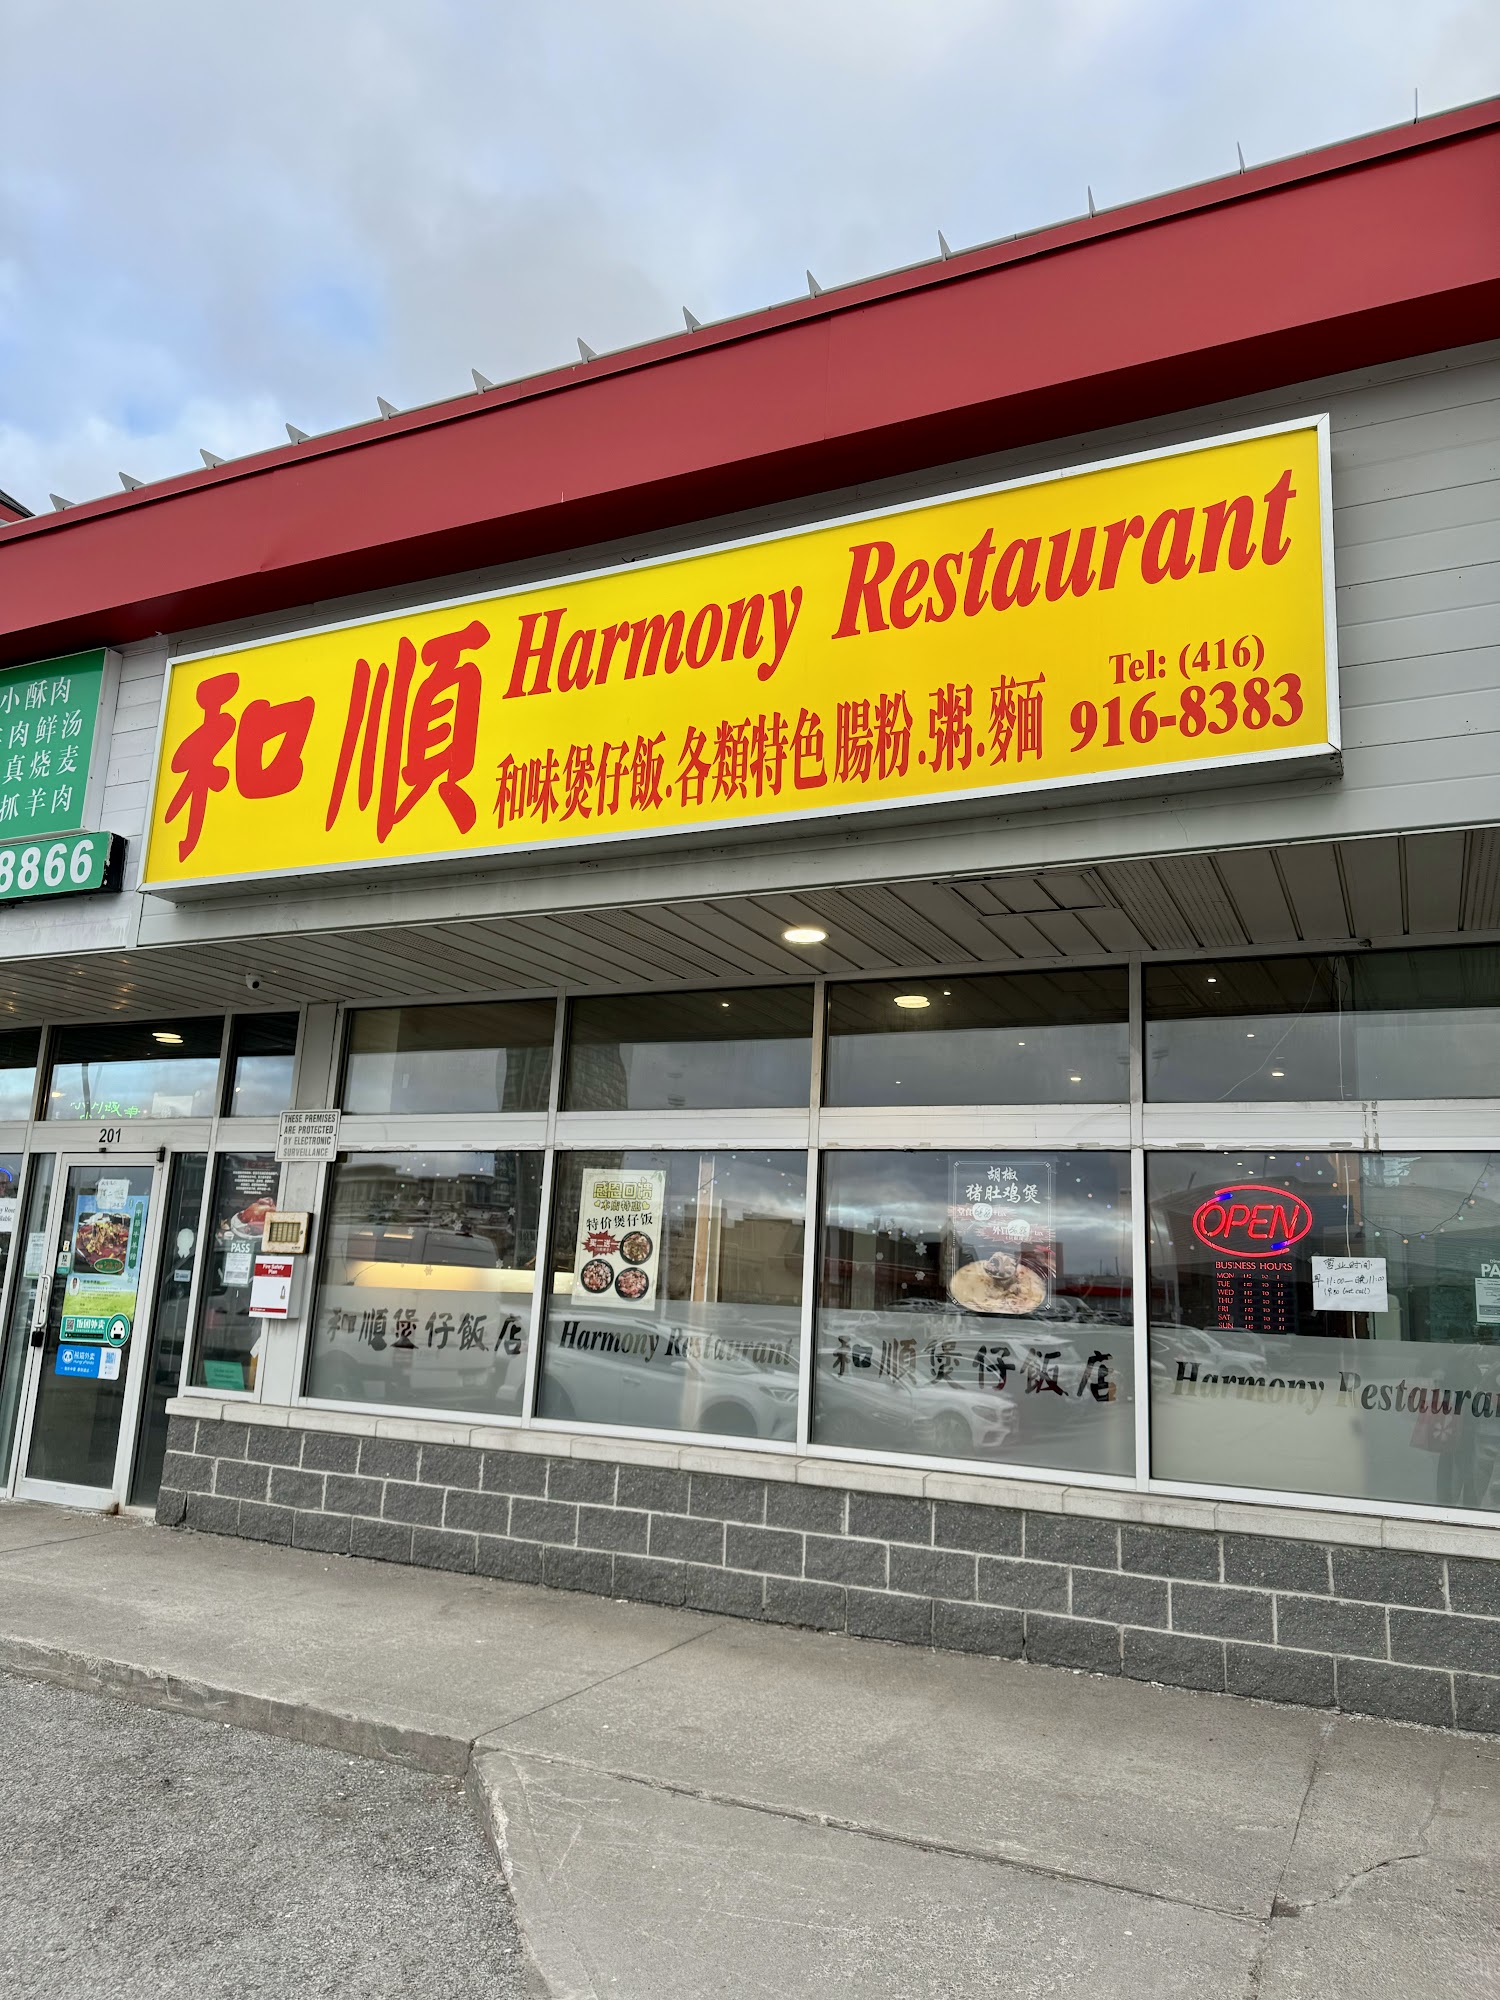 和順煲仔飯 Harmony Restaurant